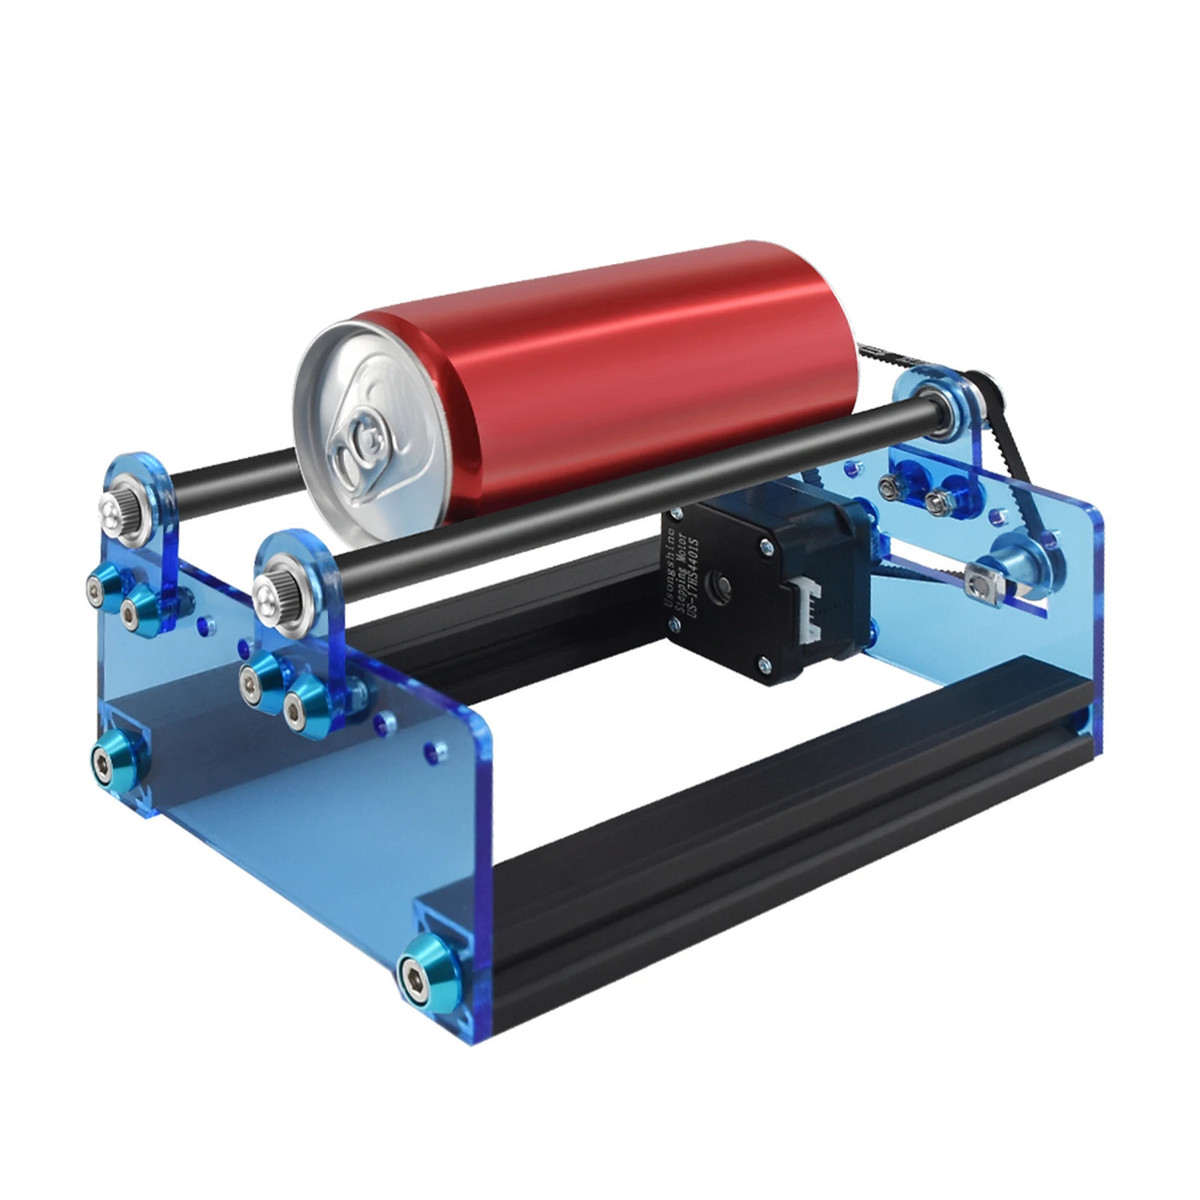 Laser Engraving Roller